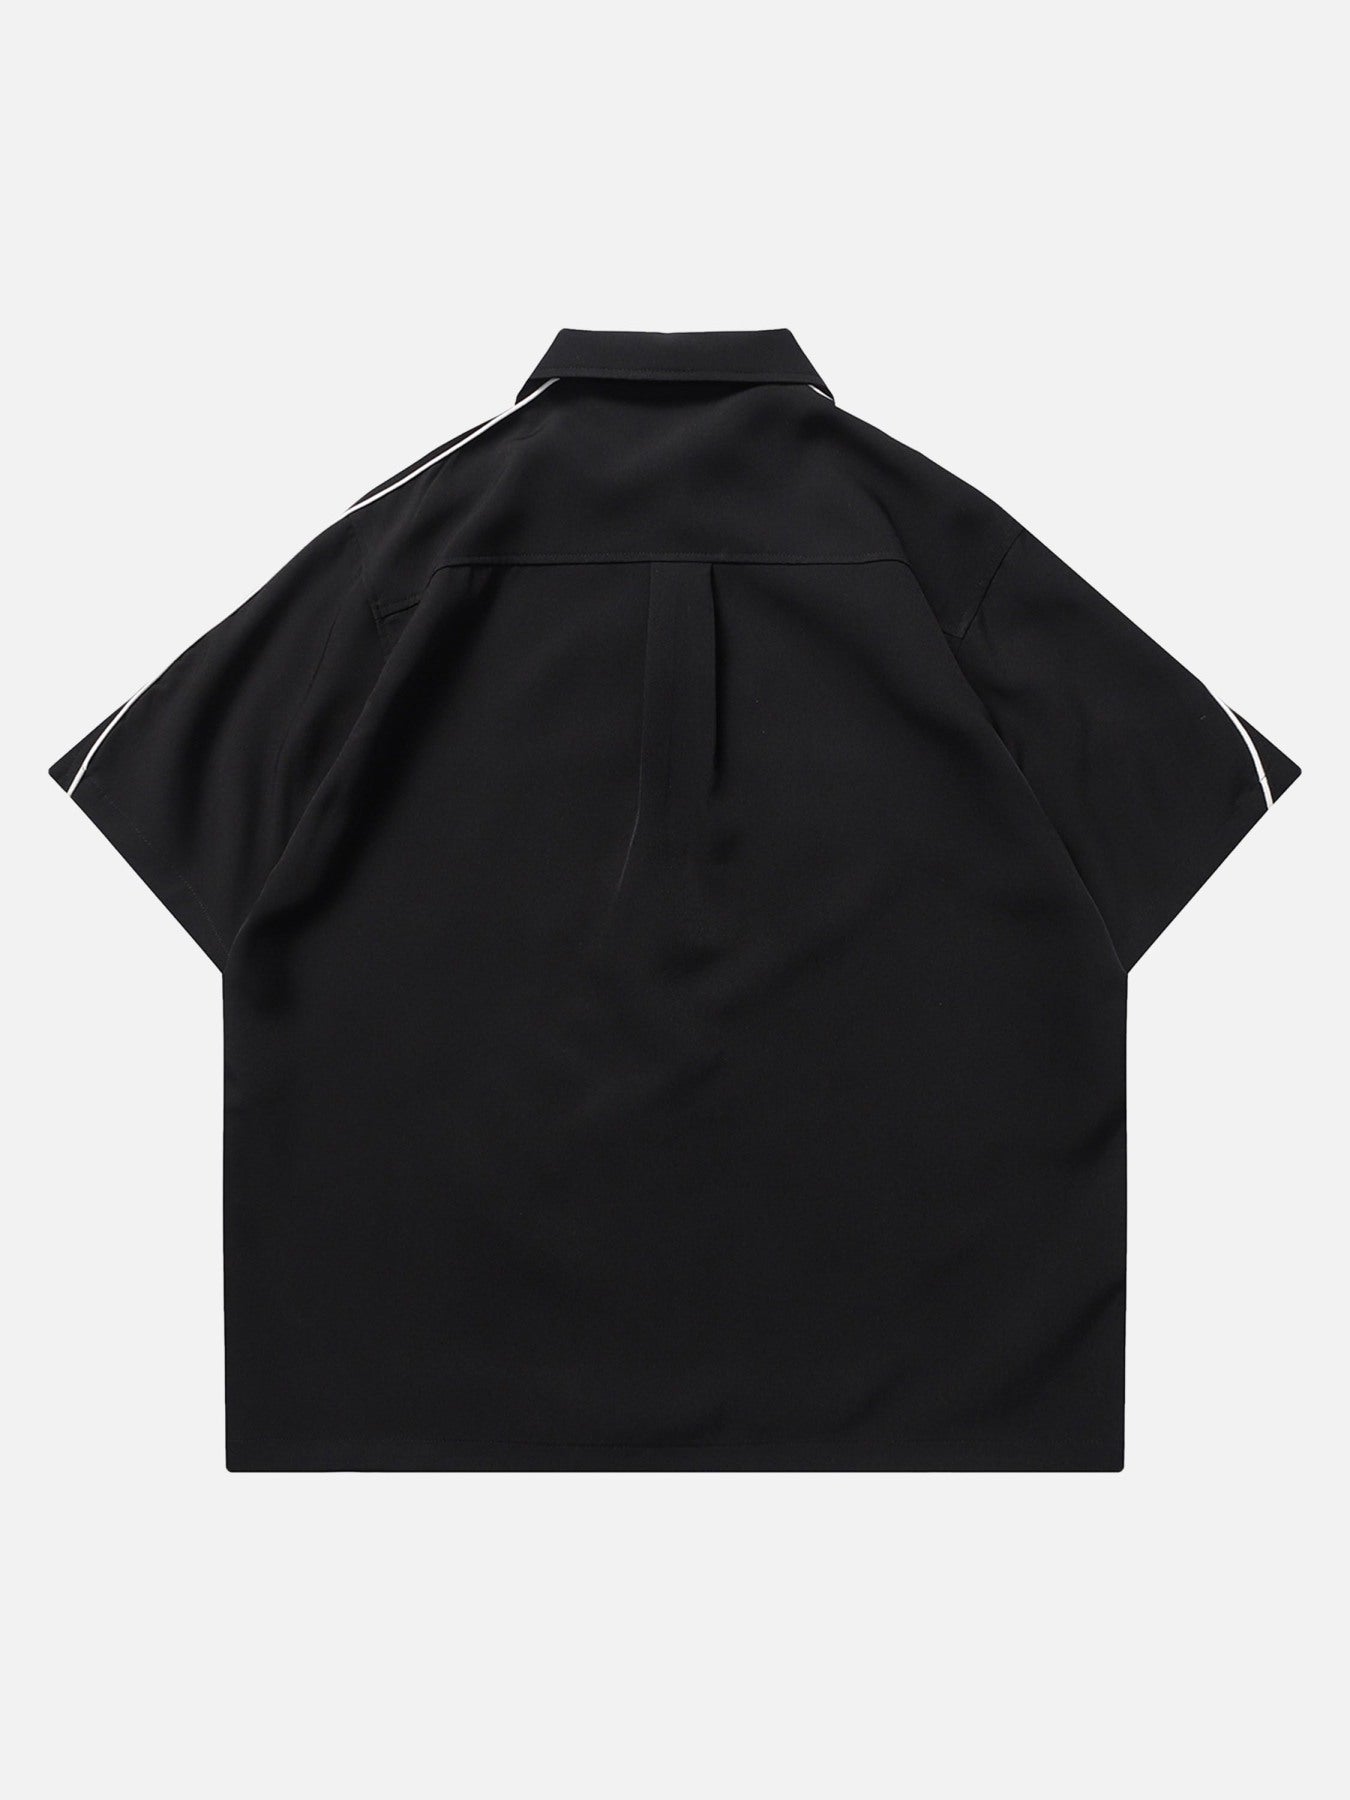 Thesupermade Star Zipper Design Shirt -1575